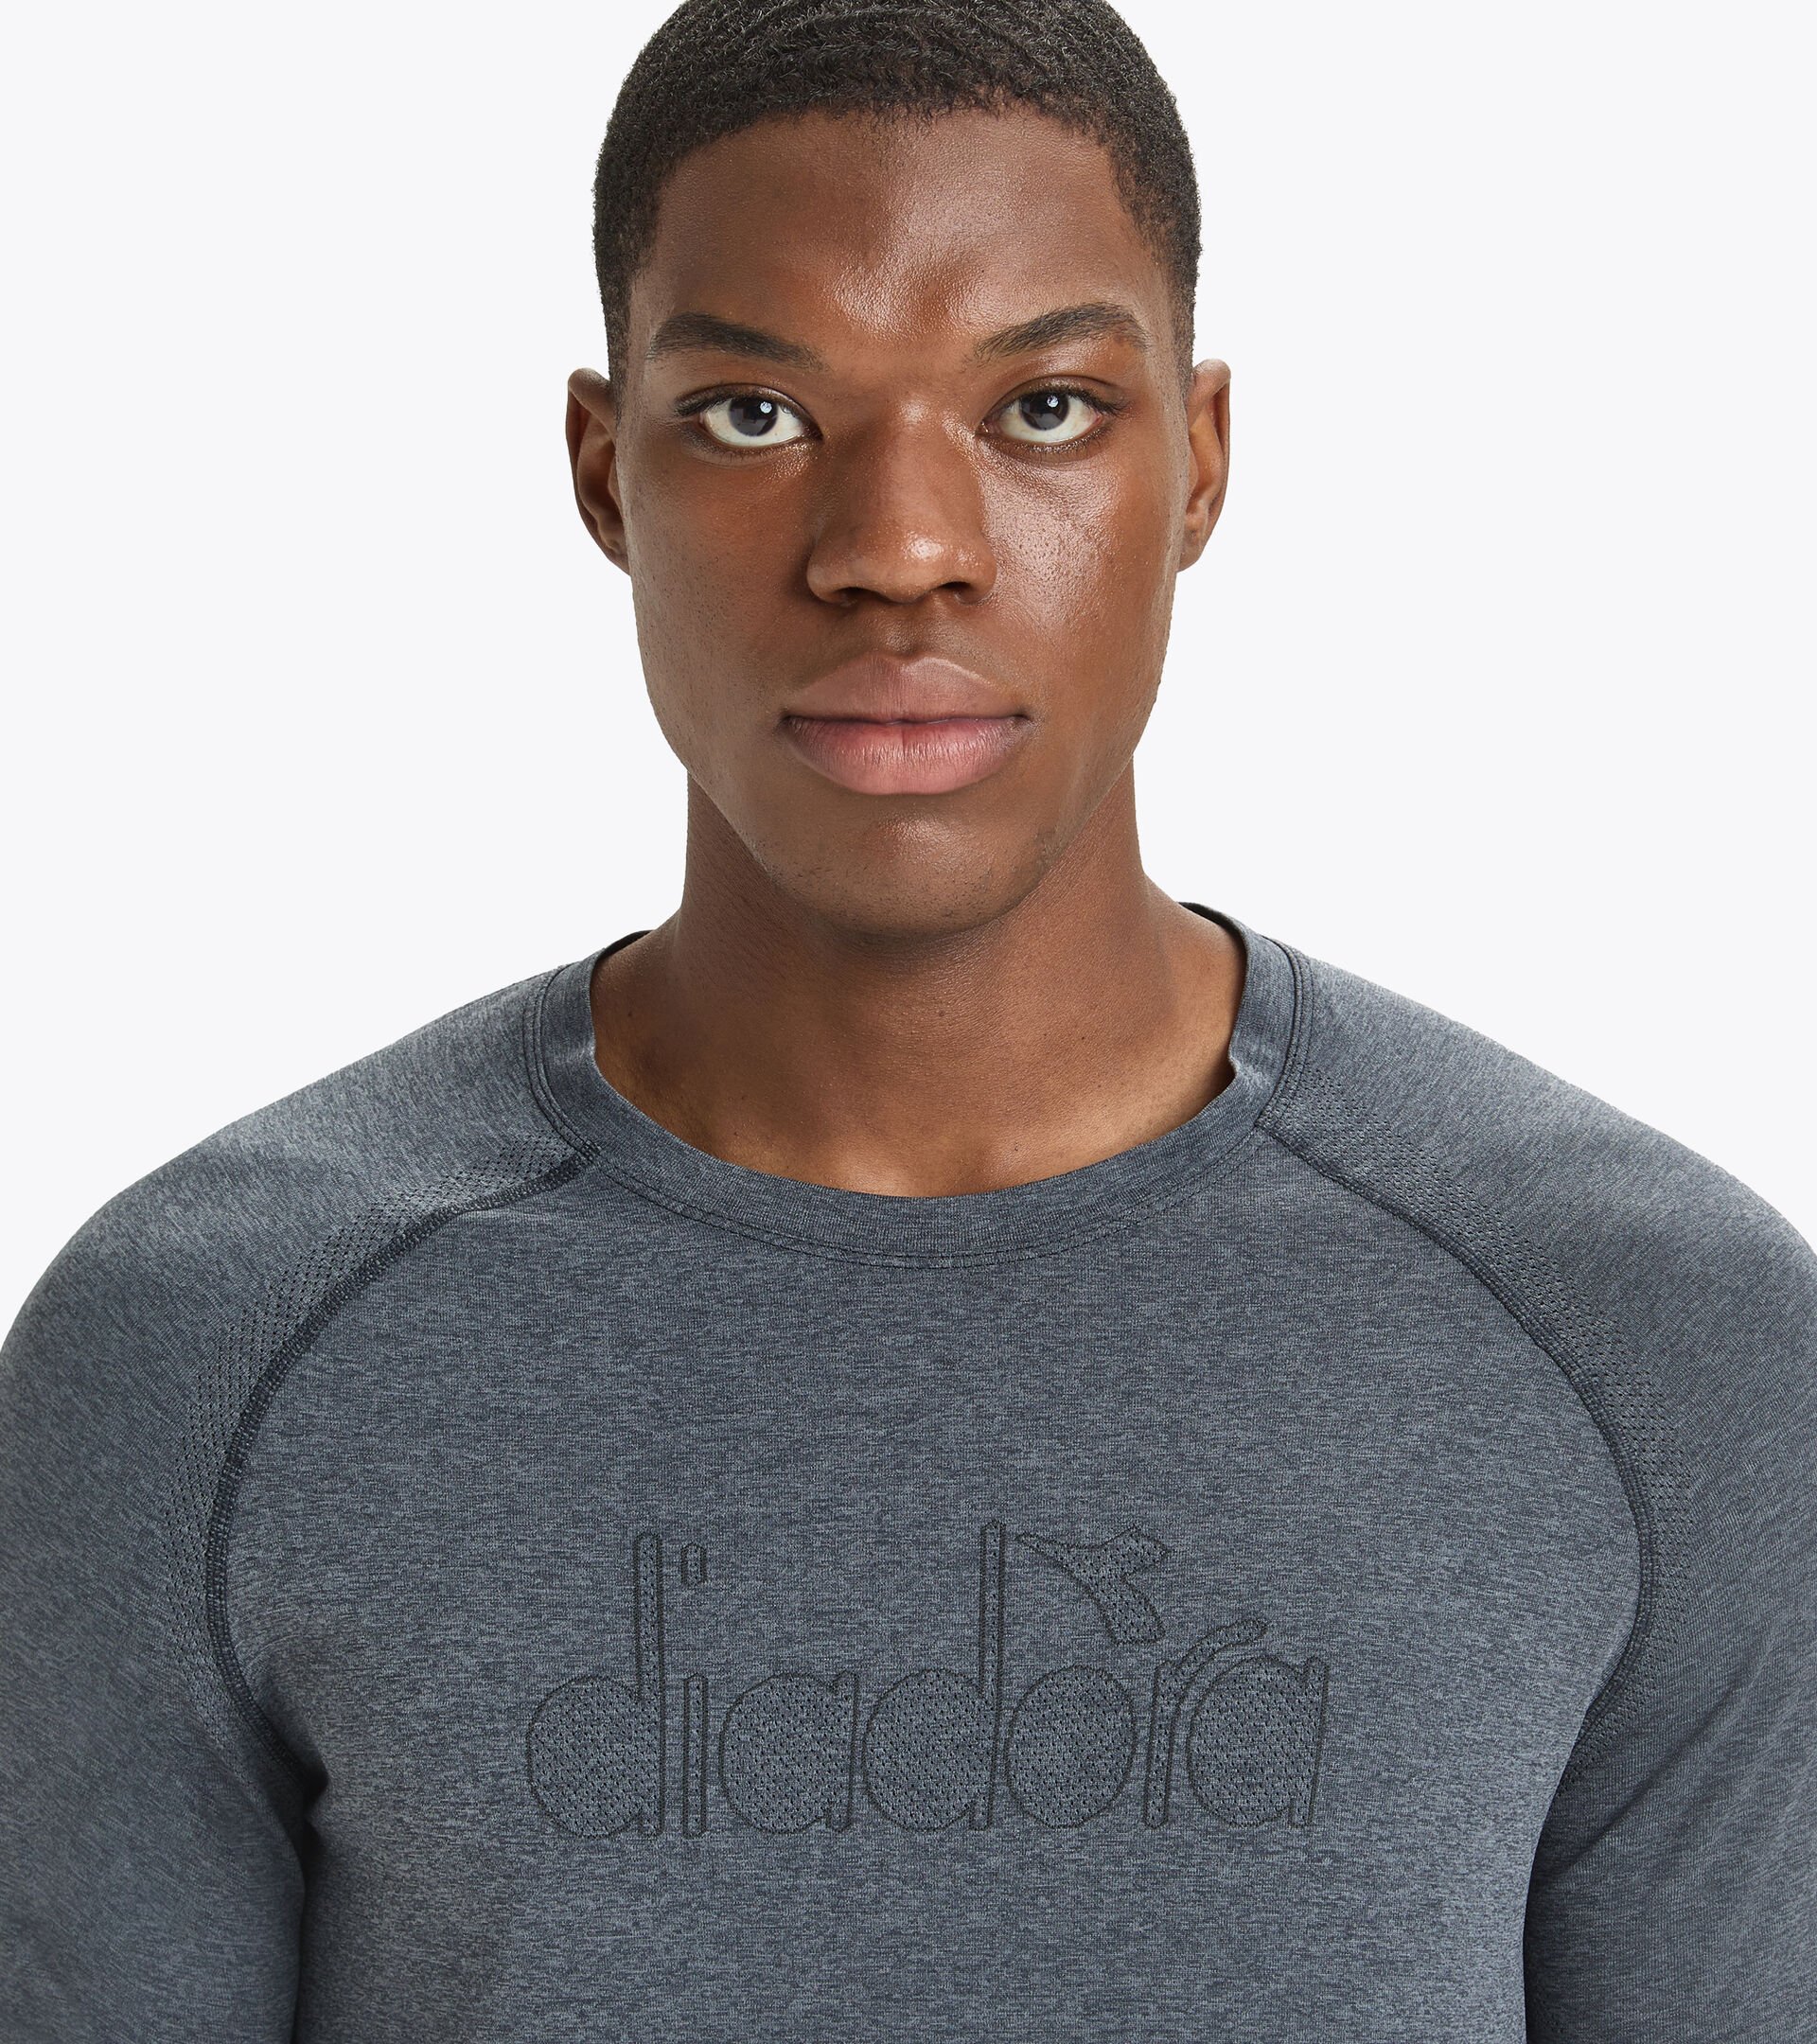 T-shirt de Sport noir Homme